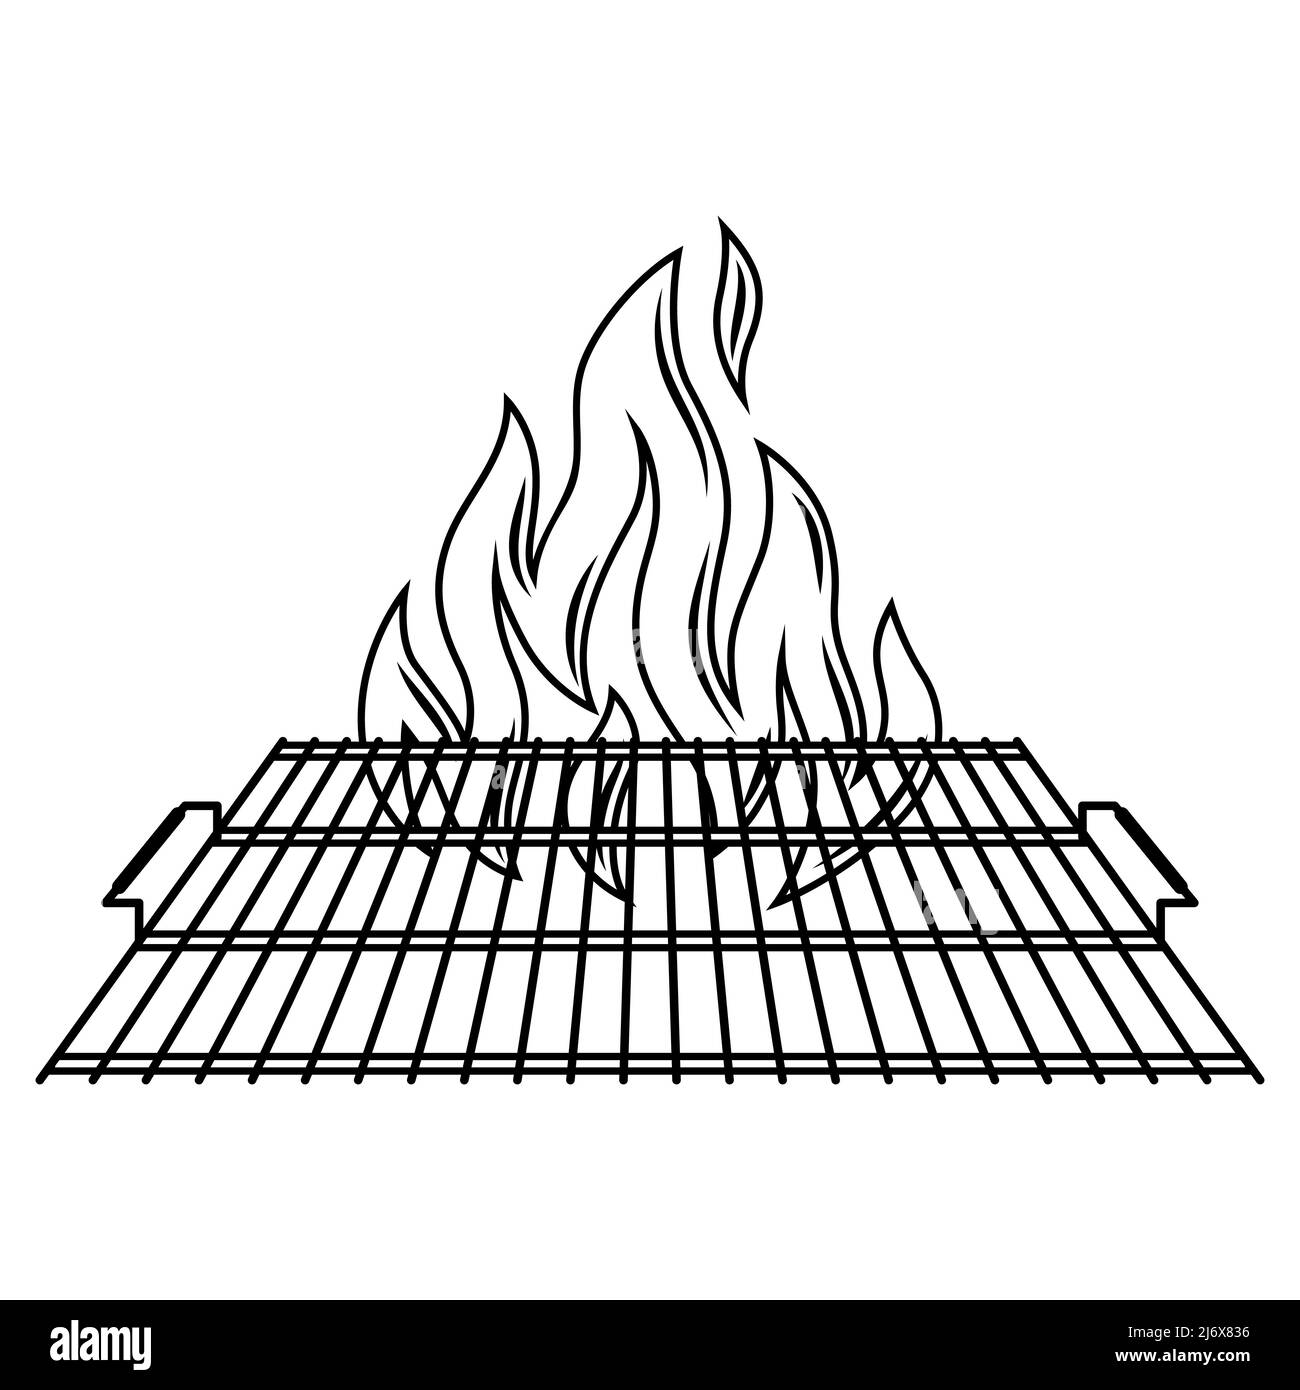 Immagine della griglia in acciaio con fuoco. Cucina barbecue stilizzata e ristorante utensil. Illustrazione Vettoriale